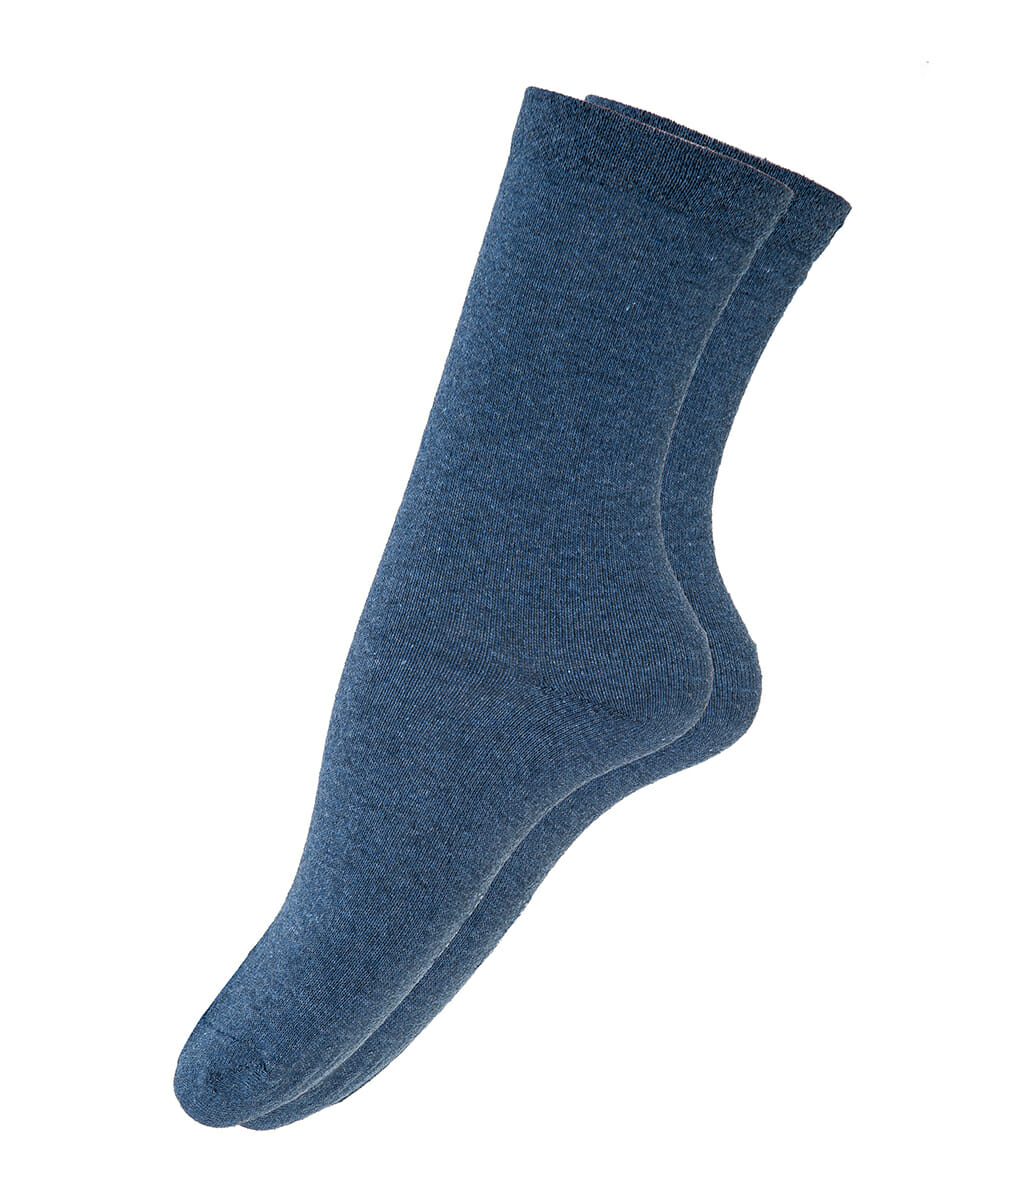 Γυναικεία κάλτσα μόνοχρωμη μπλε ραφ 4288 Μπλε Ραφ